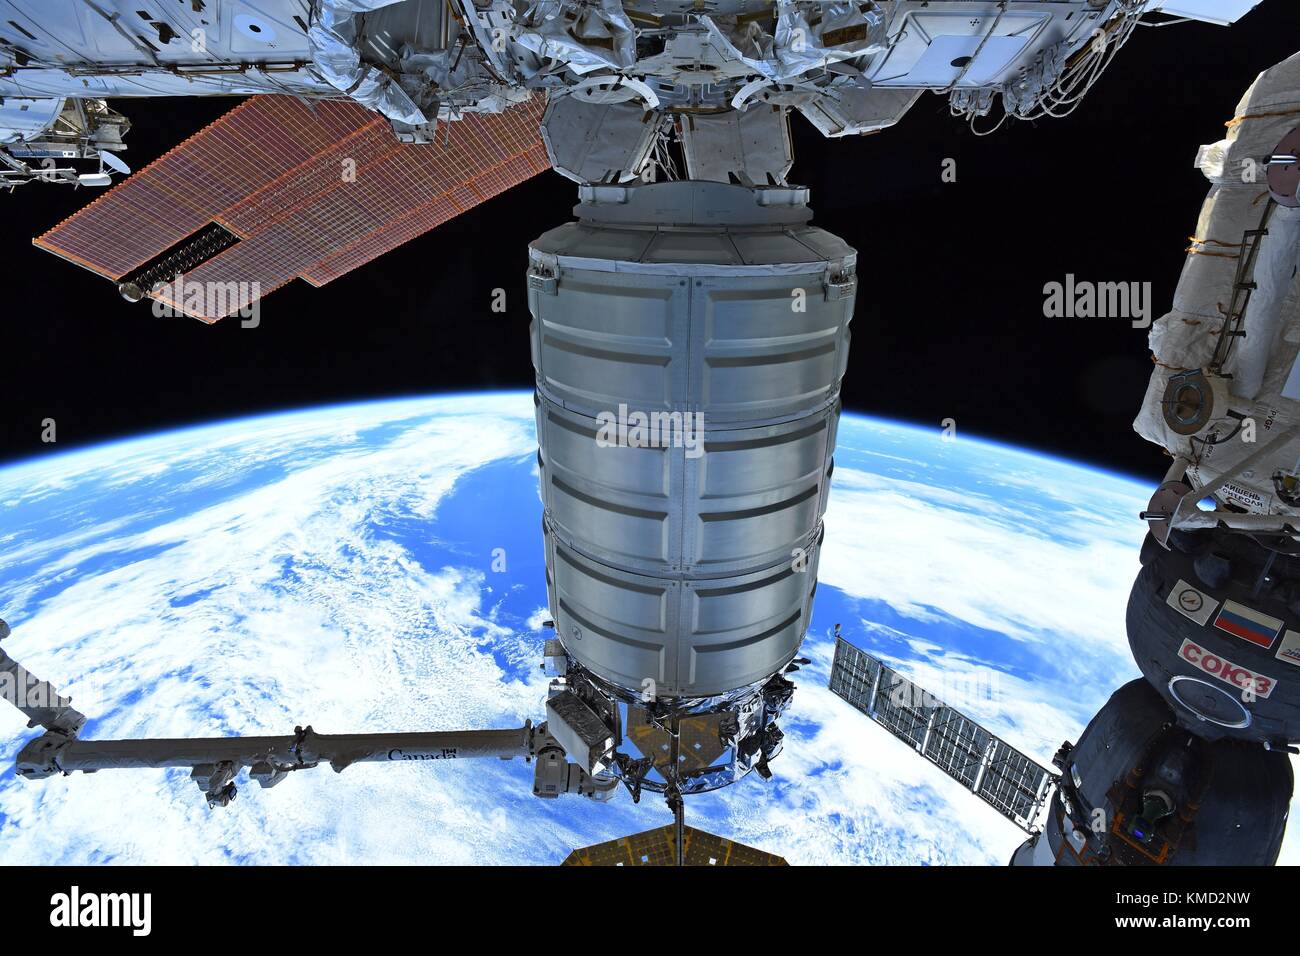 L'orbitale ATK Cygnus cargo veicolo spaziale è rilasciato dal Canada il braccio 2 dalla stazione spaziale internazionale il 6 dicembre 2017 in orbita intorno alla terra. Cygnus verrà distribuito 14 CubeSats dal NanoRacks deployer e sarà successivamente bruciato sul rientro distruttivo nell'atmosfera terrestre. Foto Stock